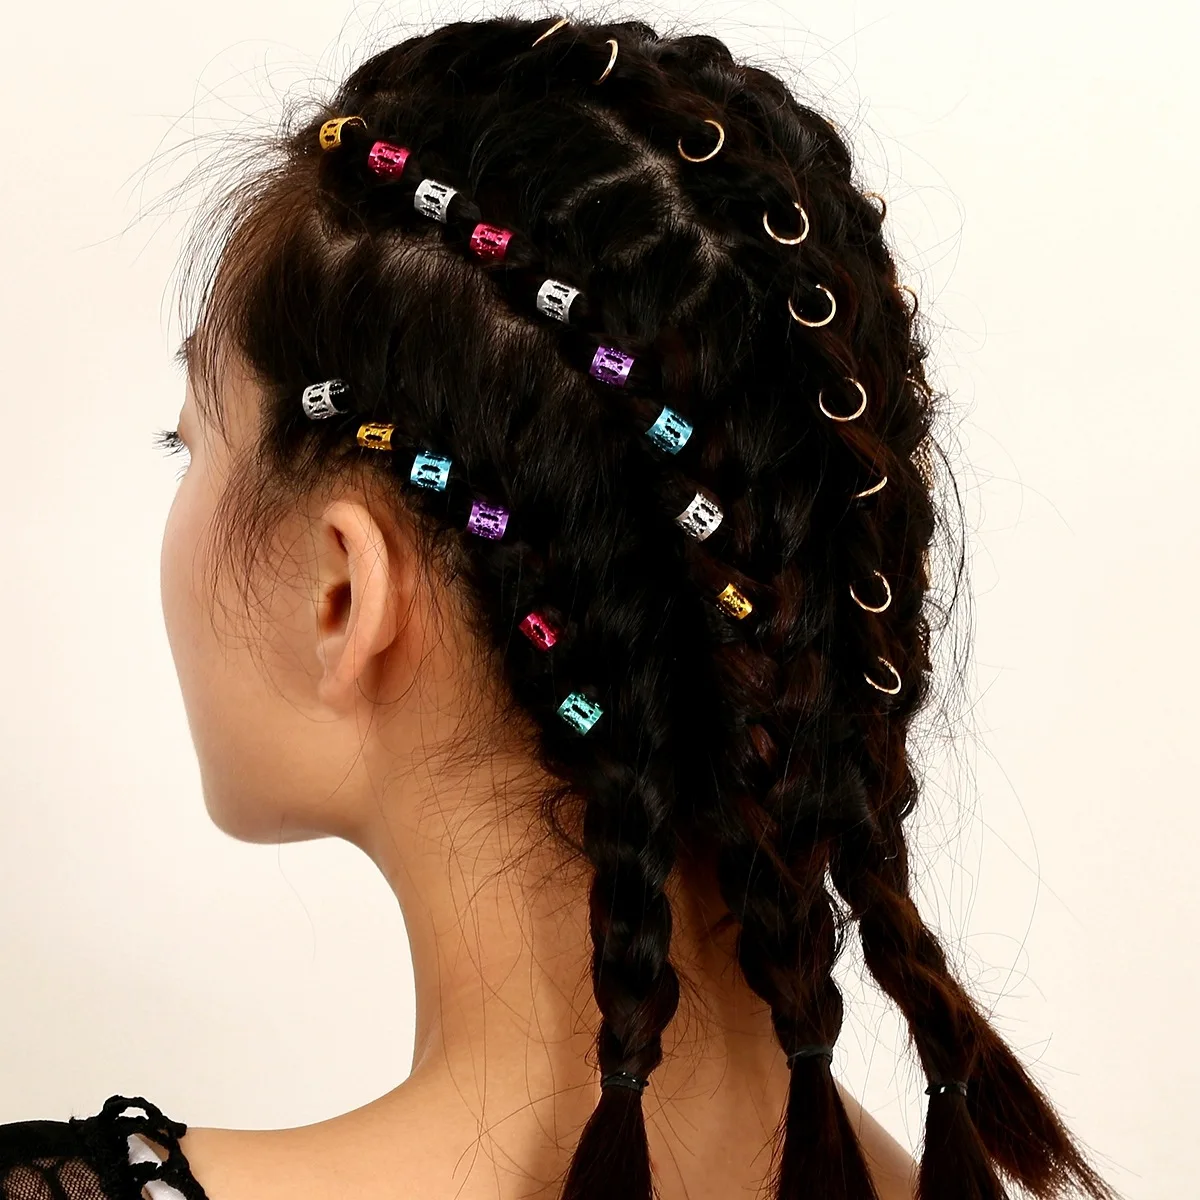 Горячая Заплетенные волосы орнамент для женщин очаровательный сплав круг обруч индивидуальная оплетка DIY кулон аксессуары для волос